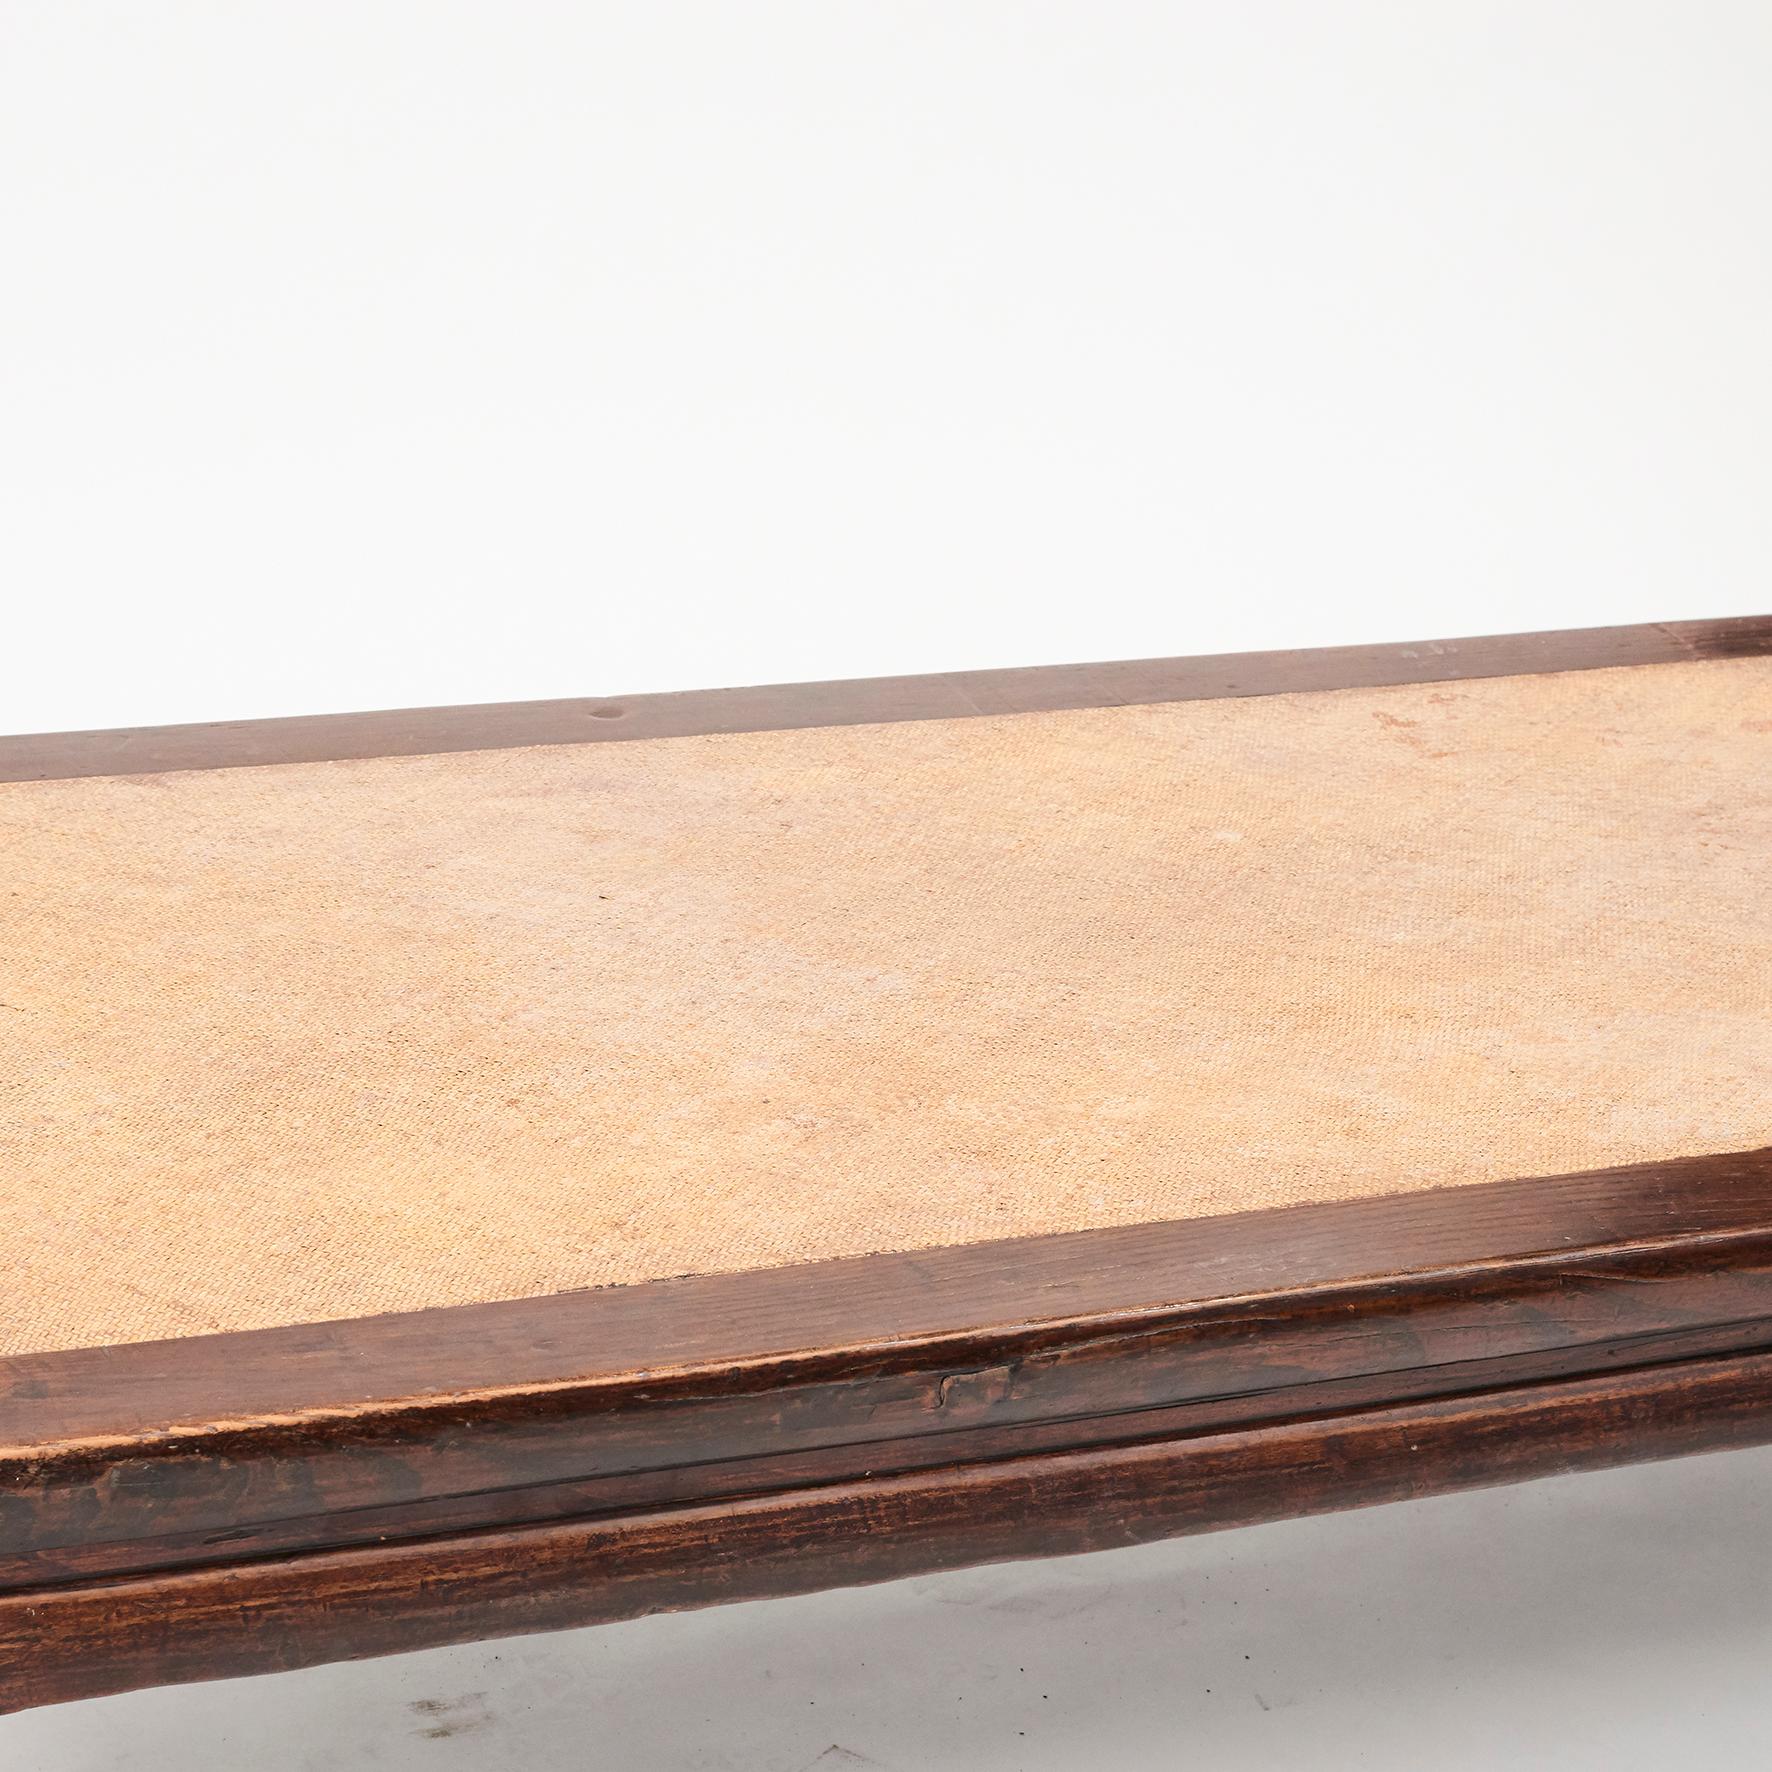 Cette grande table basse / lit à opium chinoise du 19e siècle présente un insert en osier tressé (non lié à l'âge). Bois d'orme avec patine naturelle. 
De la province du Shanxi:: 1840-1860.